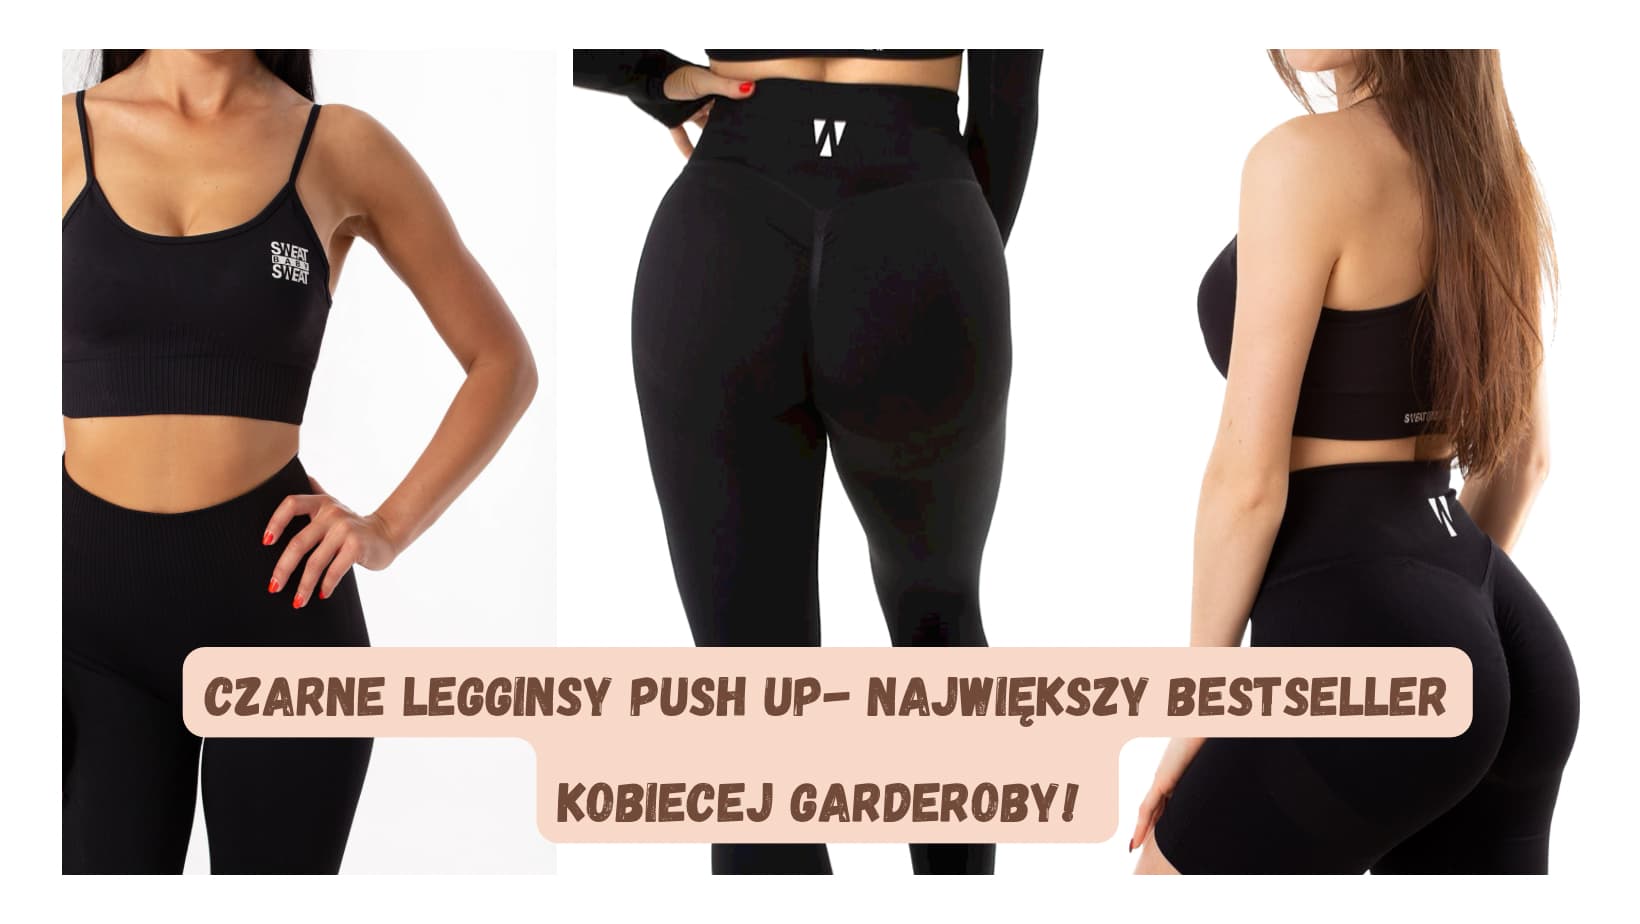 Czarne legginsy push up – największy bestseller kobiecej garderoby!